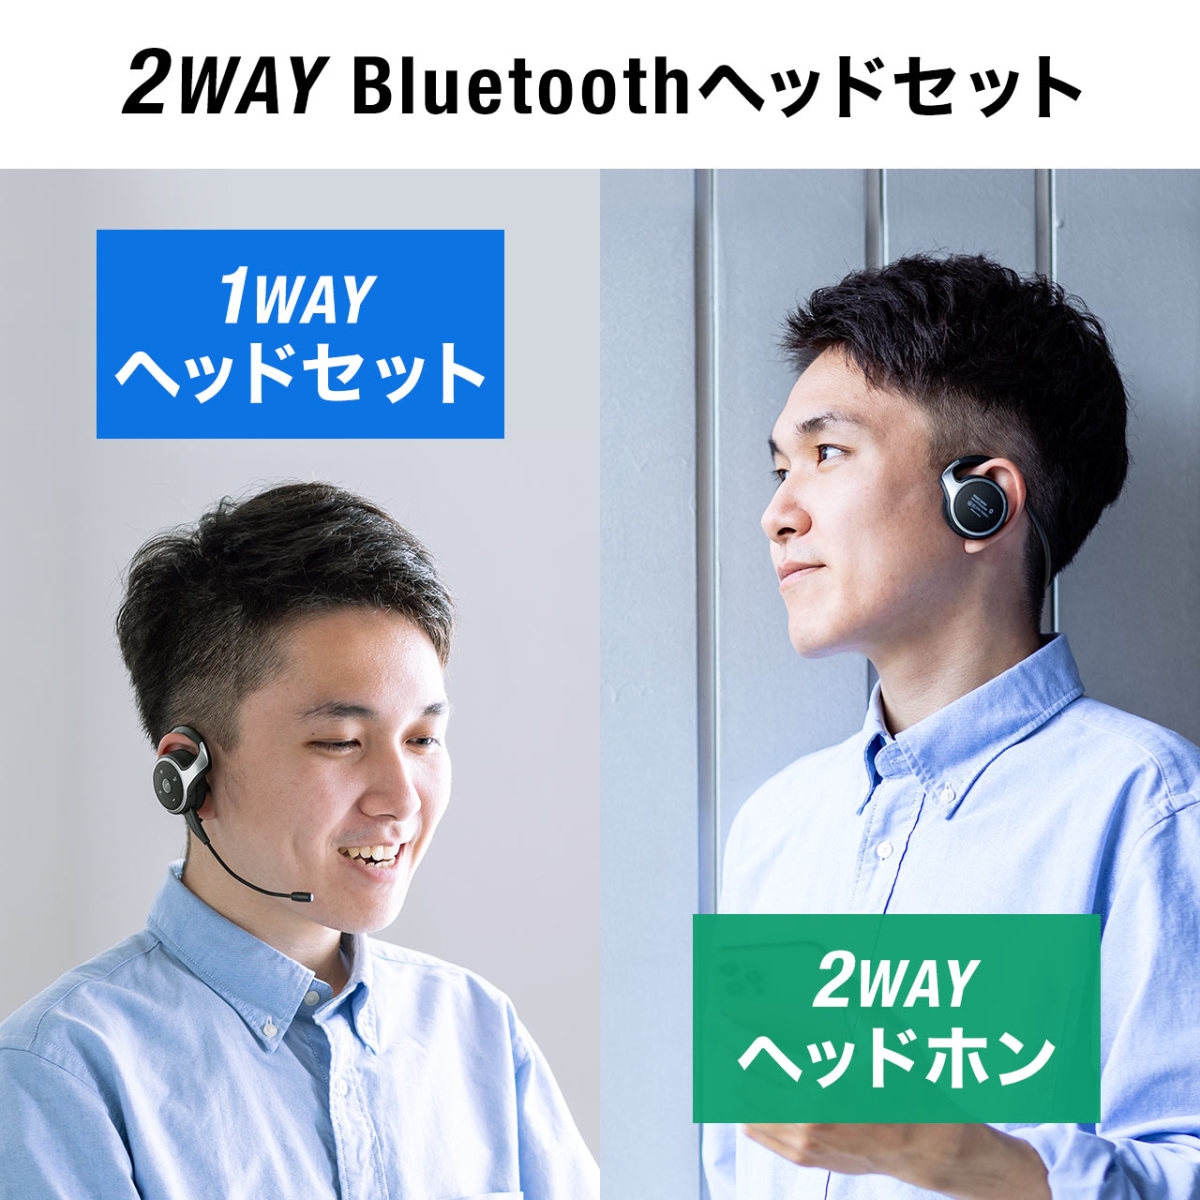 ヘッドセット Bluetooth ワイヤレス ネックバンド型 軽量 2WAY 外付けマイク ノイズキャンセル テレワーク スマホ Bluetooth イヤホン 400-BTSH020BK